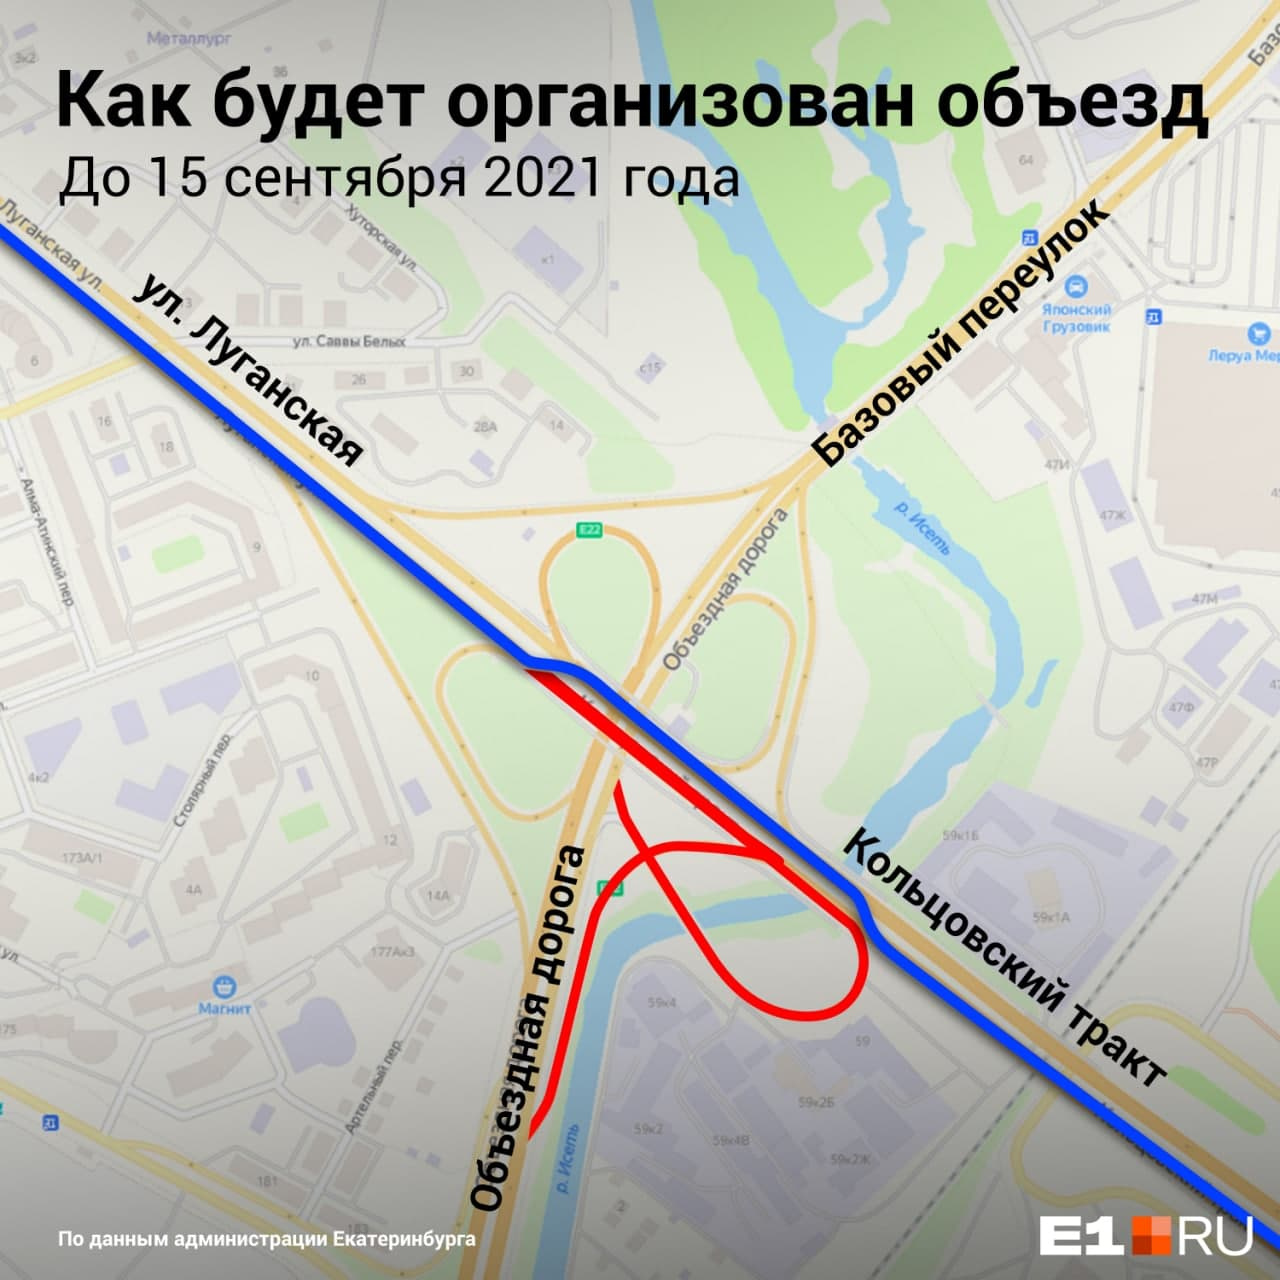 Вы тоже можете наблюдать за работой строителей <a href="https://www.e1.ru/text/transport/2021/06/09/69959549/" class="_" target="_blank">в прямом эфире на E1.RU</a>